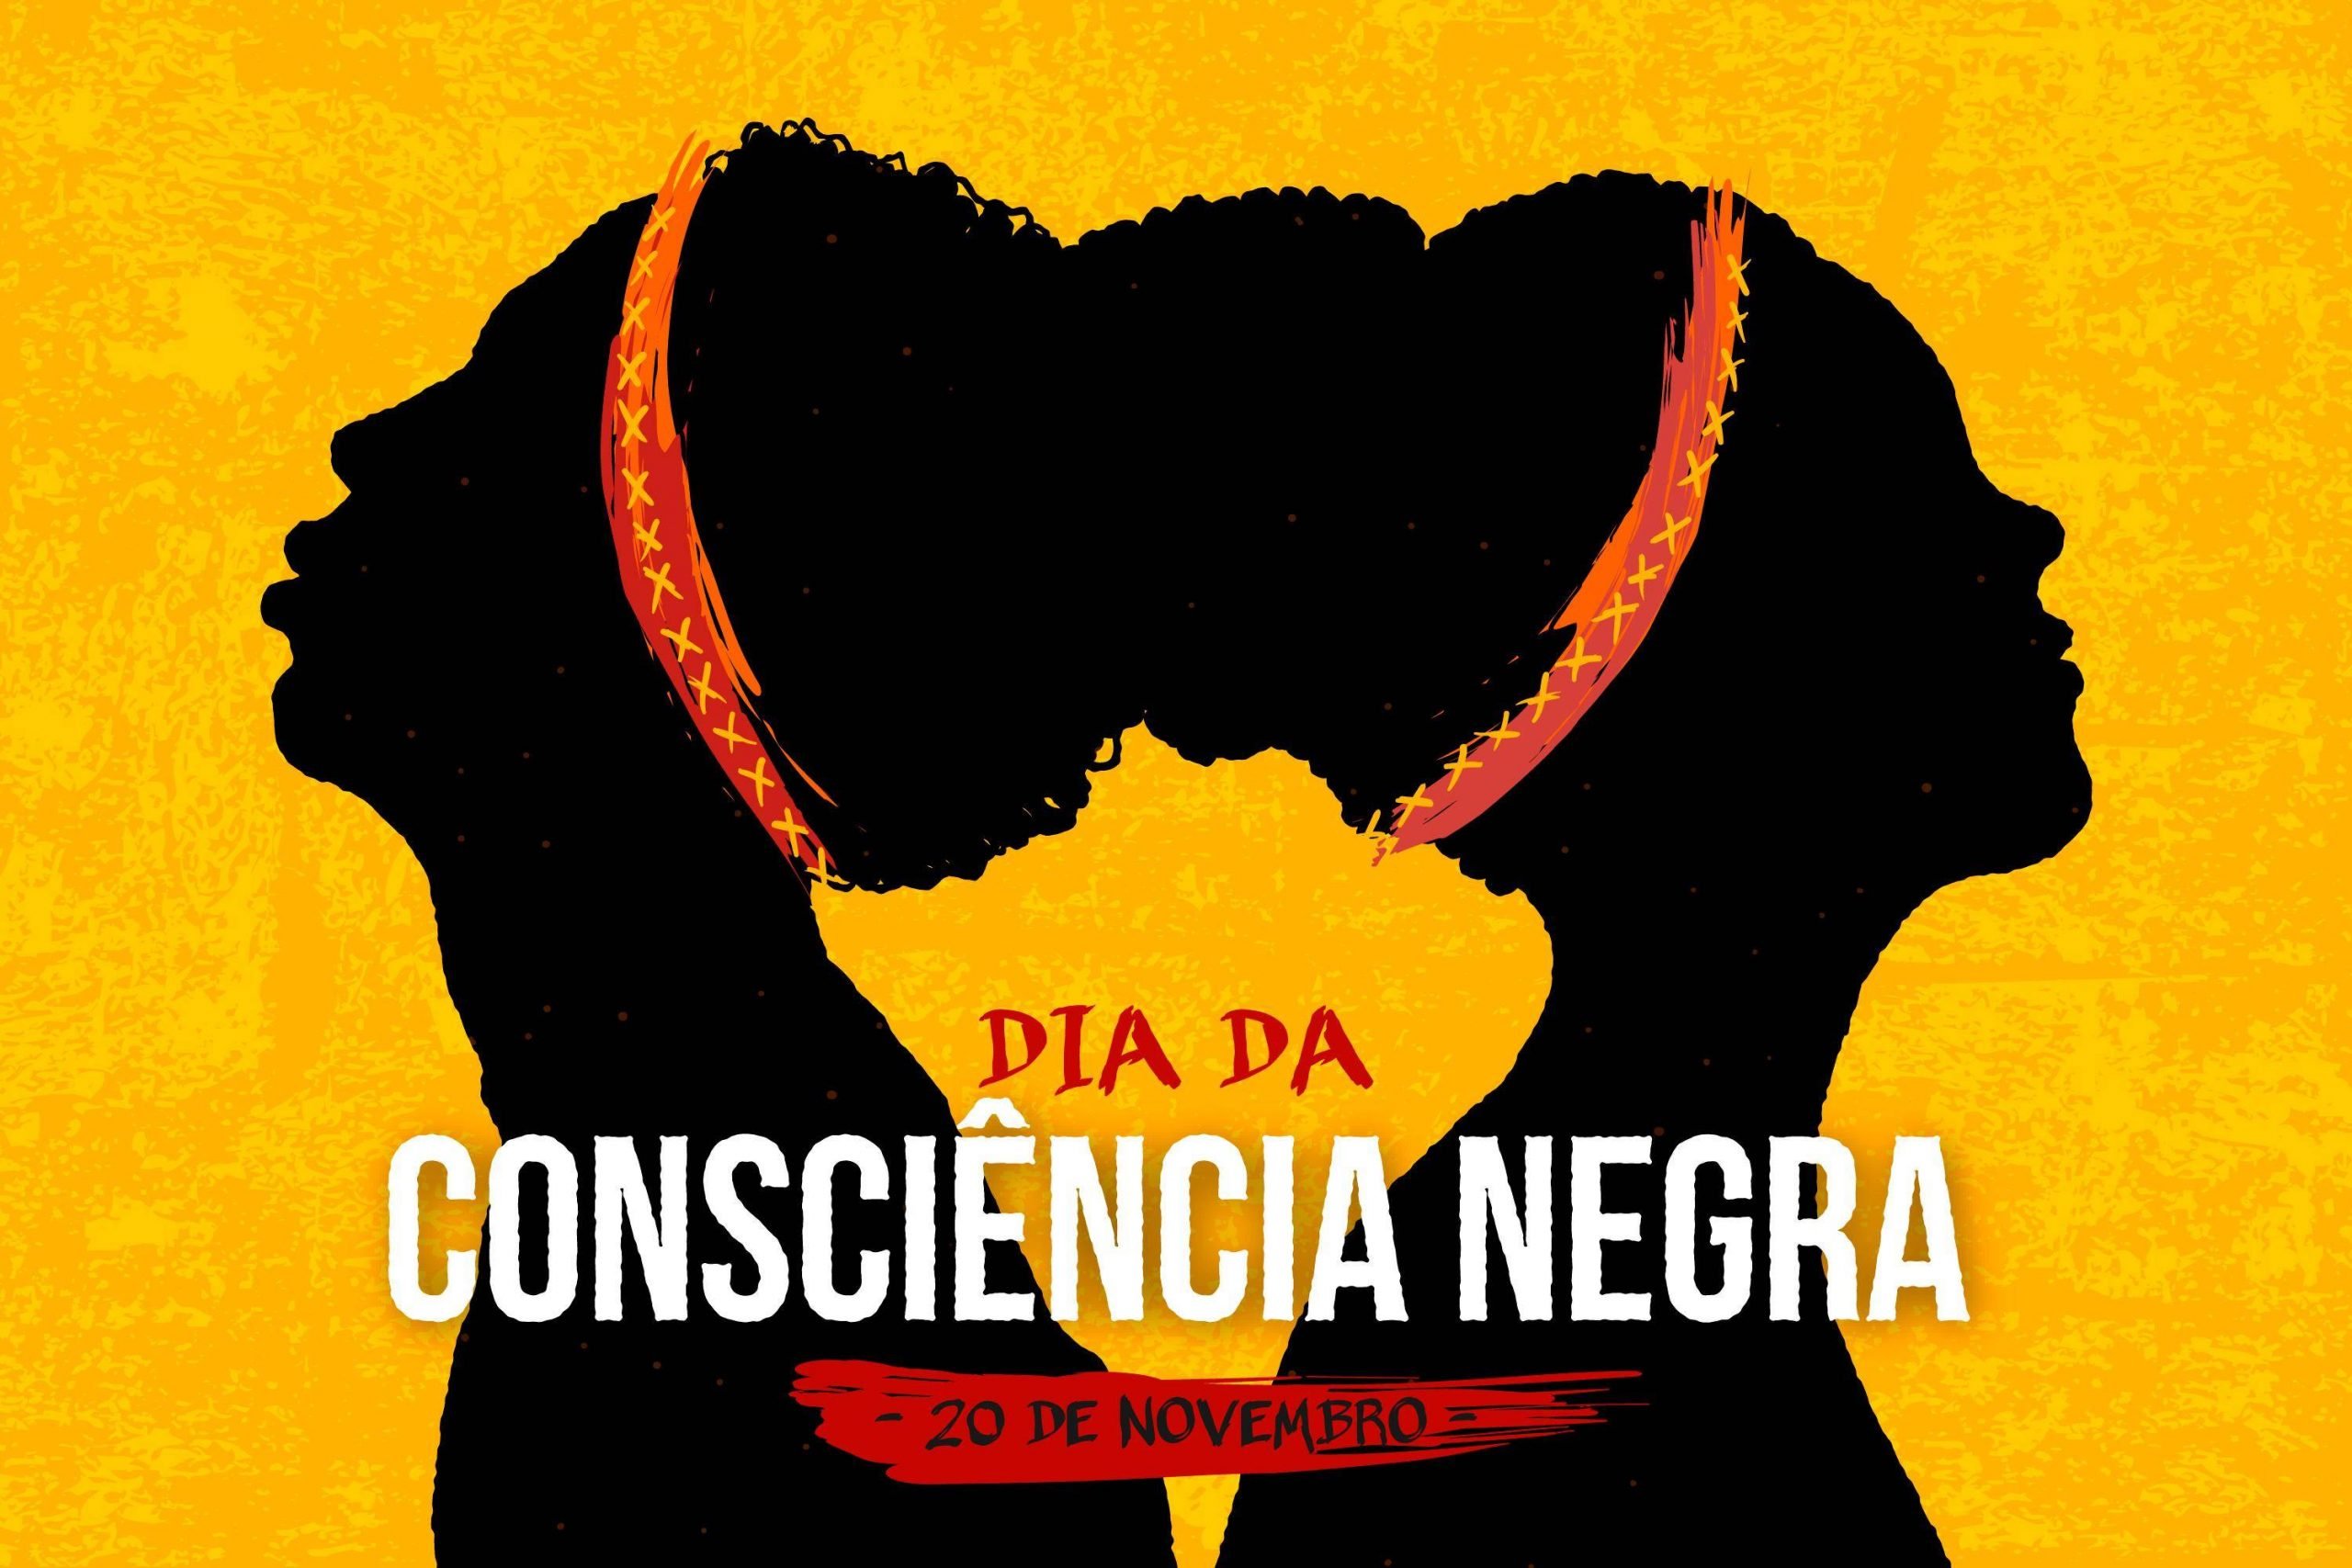 Desenho de pessoas negras com a frase "Dia da Consciência Negra 20 de novembro".